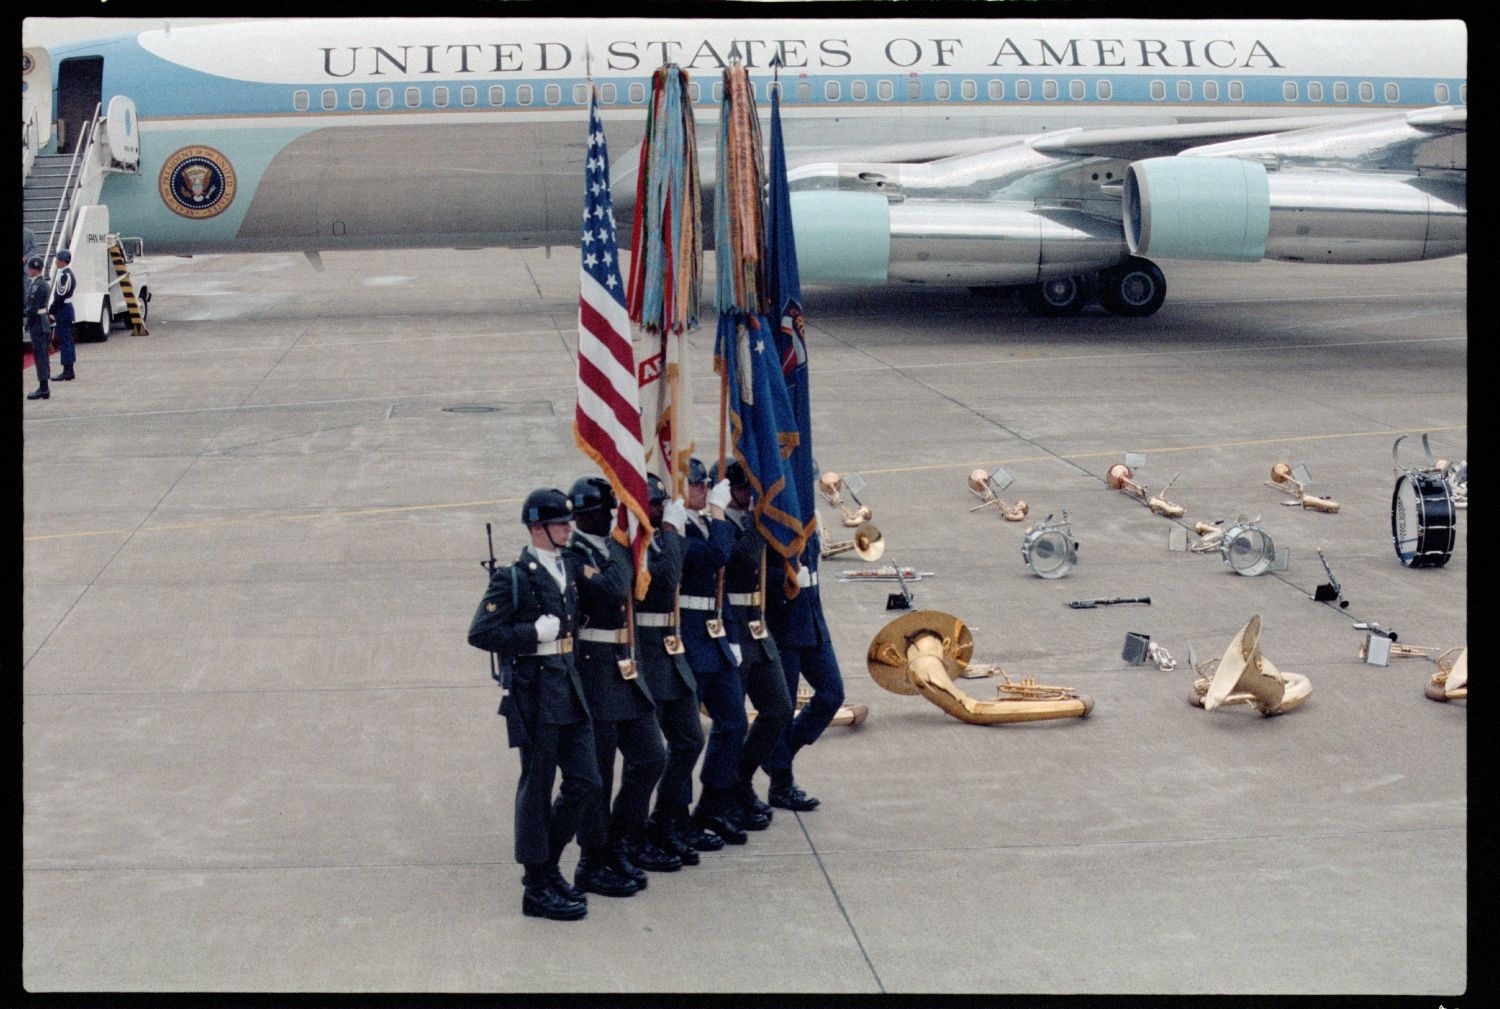 Fotografie: Besuch von US-Präsident Ronald Reagan in West-Berlin (AlliiertenMuseum/U.S. Army Photograph Public Domain Mark)